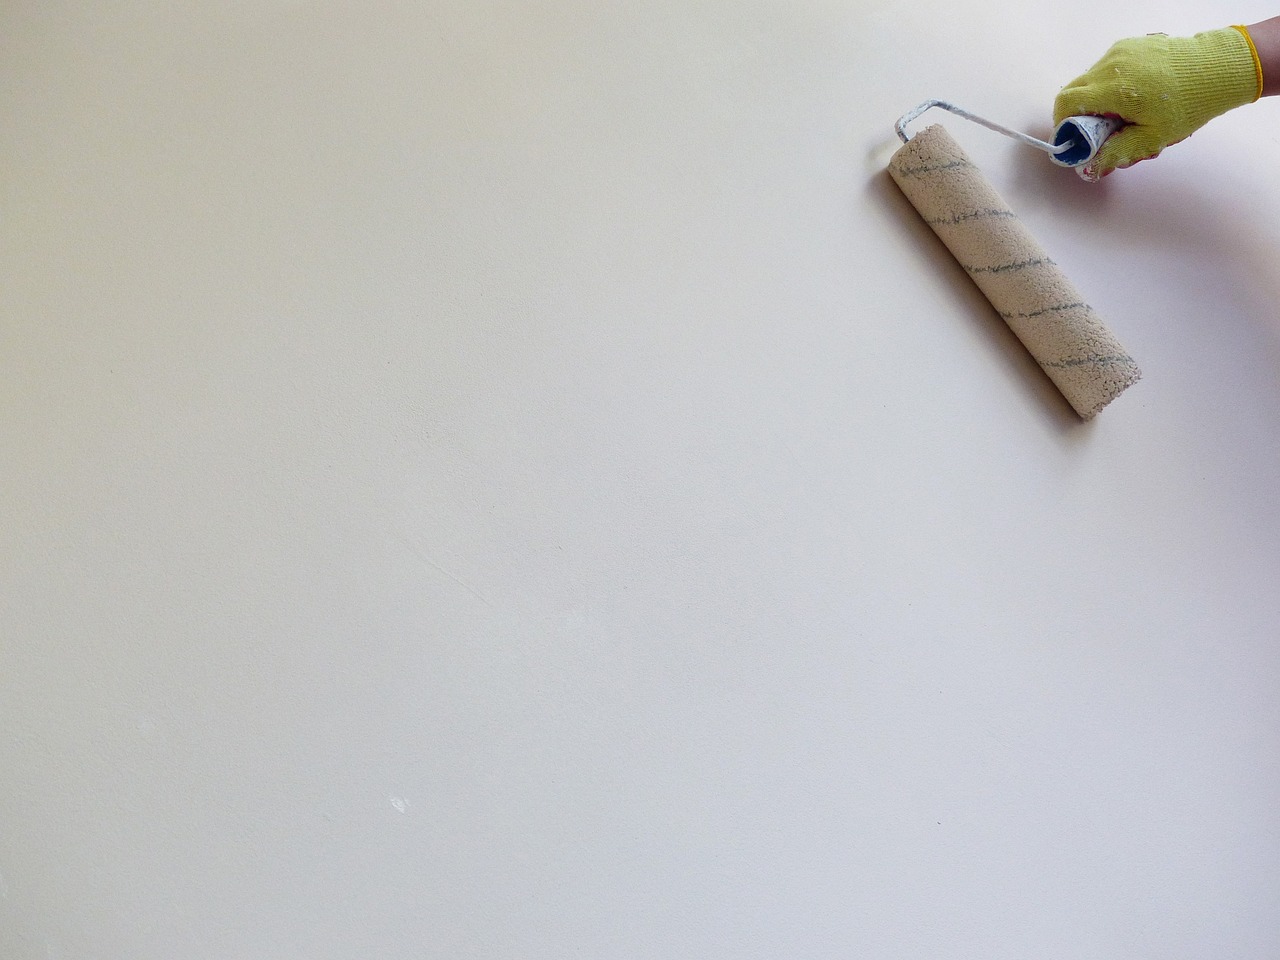 Quel pan de mur peindre pour agrandir la pièce: Astuces pour choisir le pan de mur à peindre